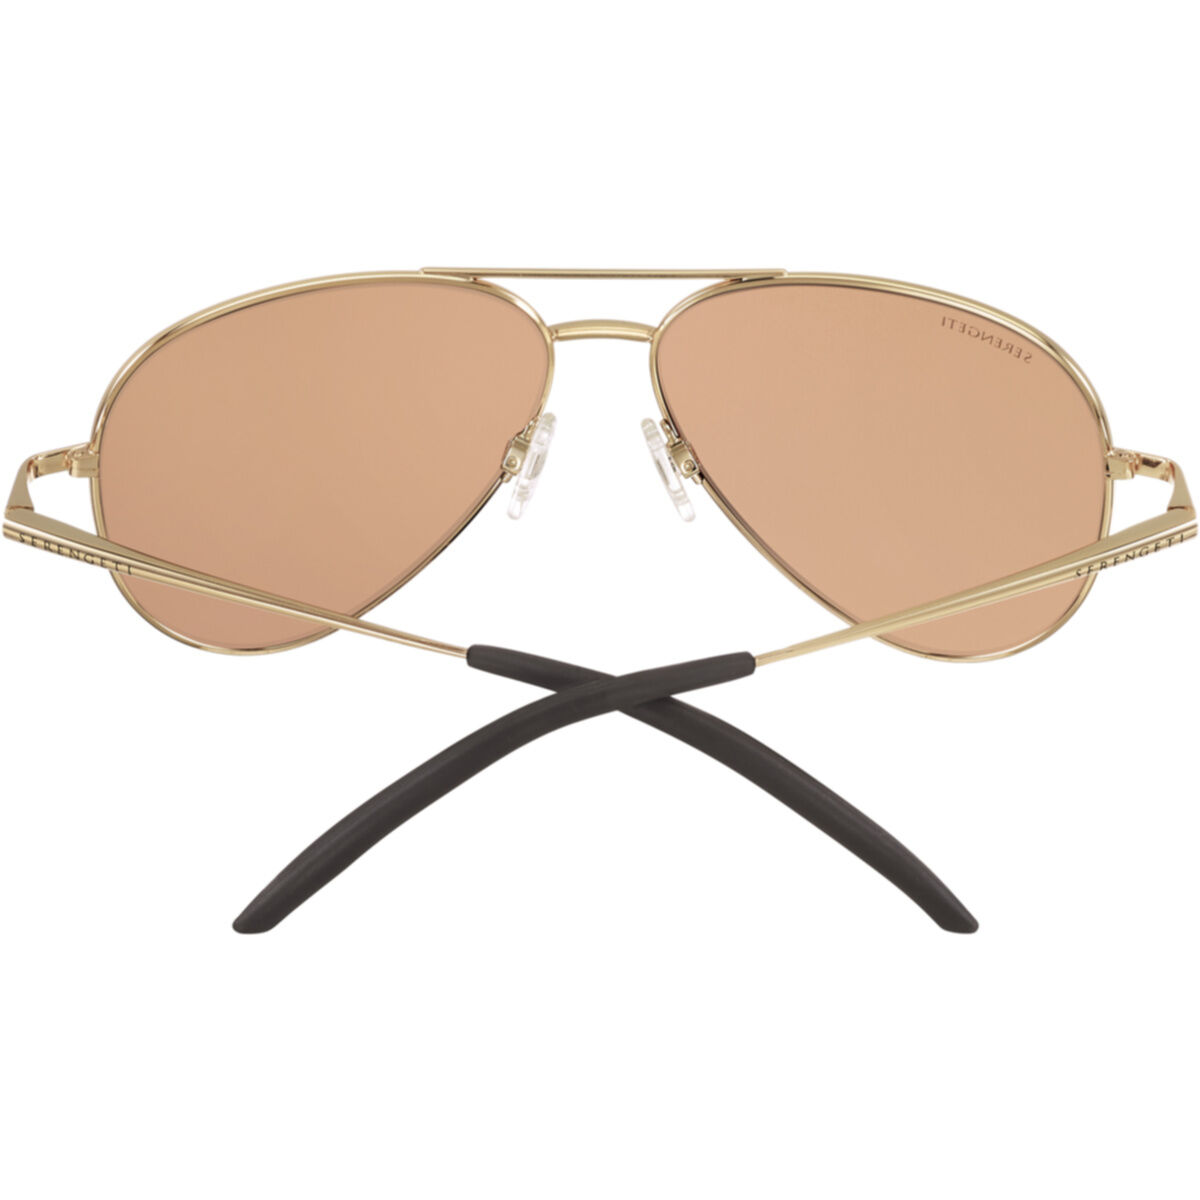 new polarized spring hinge sunglasses driving aviator best style for men & women 